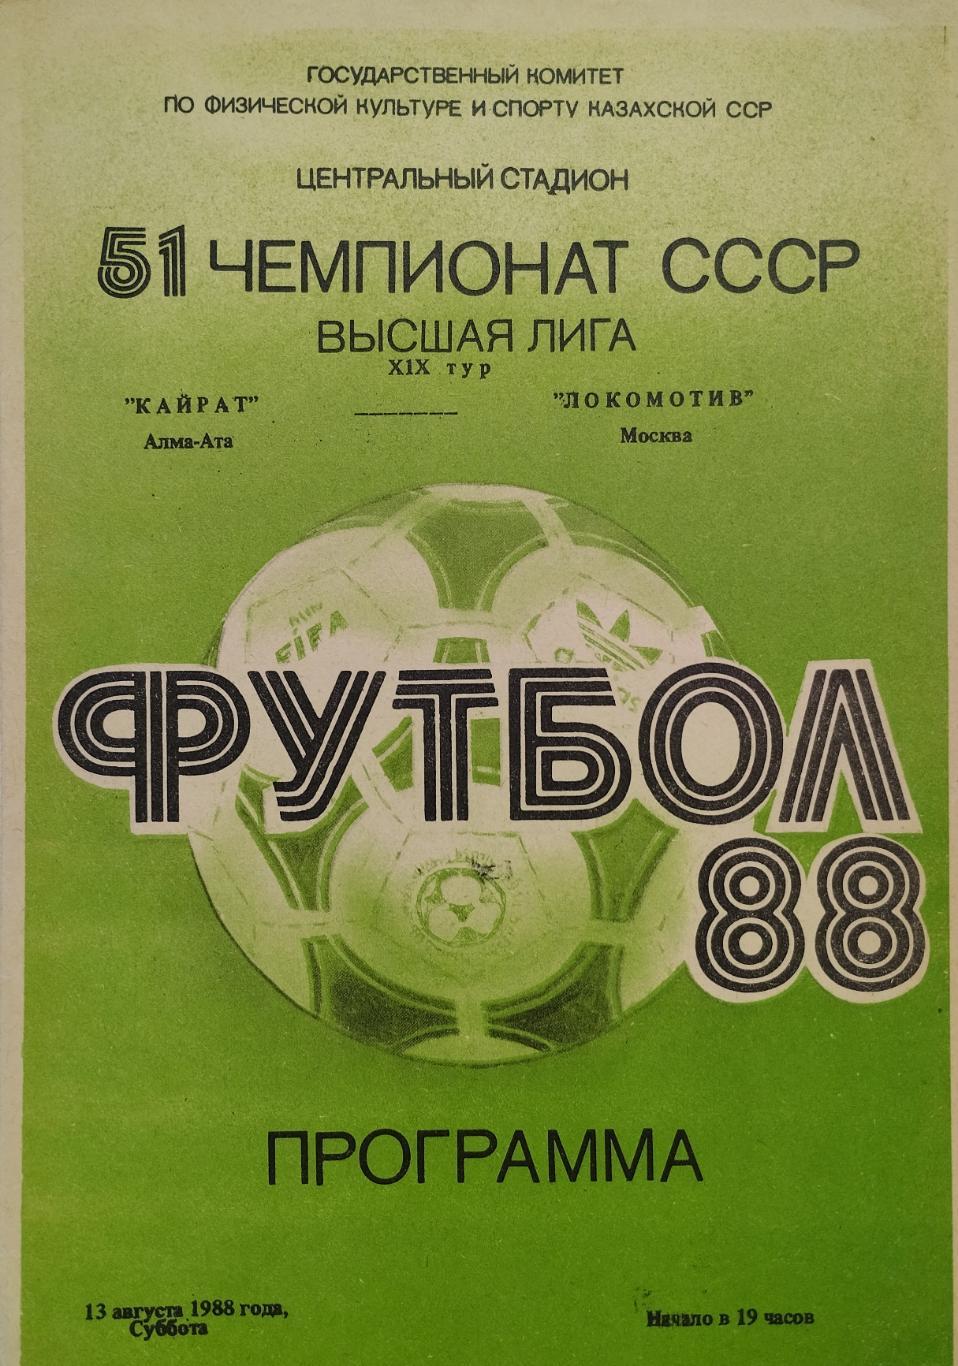 Кайрат Алма-Ата - Локомотив Москва - 13.08.1988.